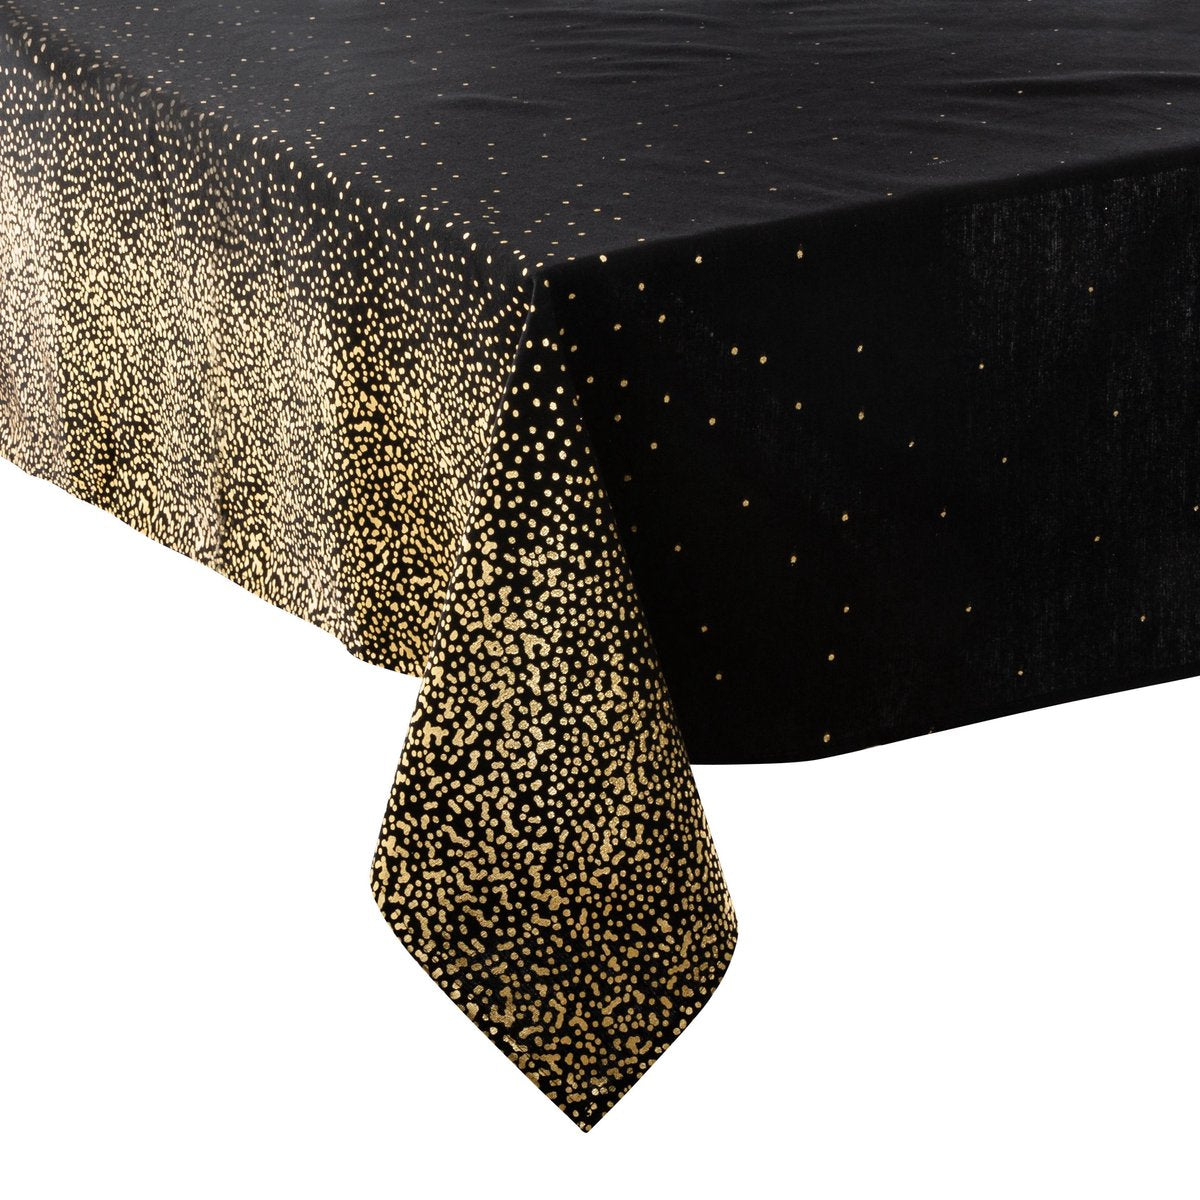 DELUXE tafelkleed - Leop zwart met goud - 140 x 240 cm - Kersttafelkleed